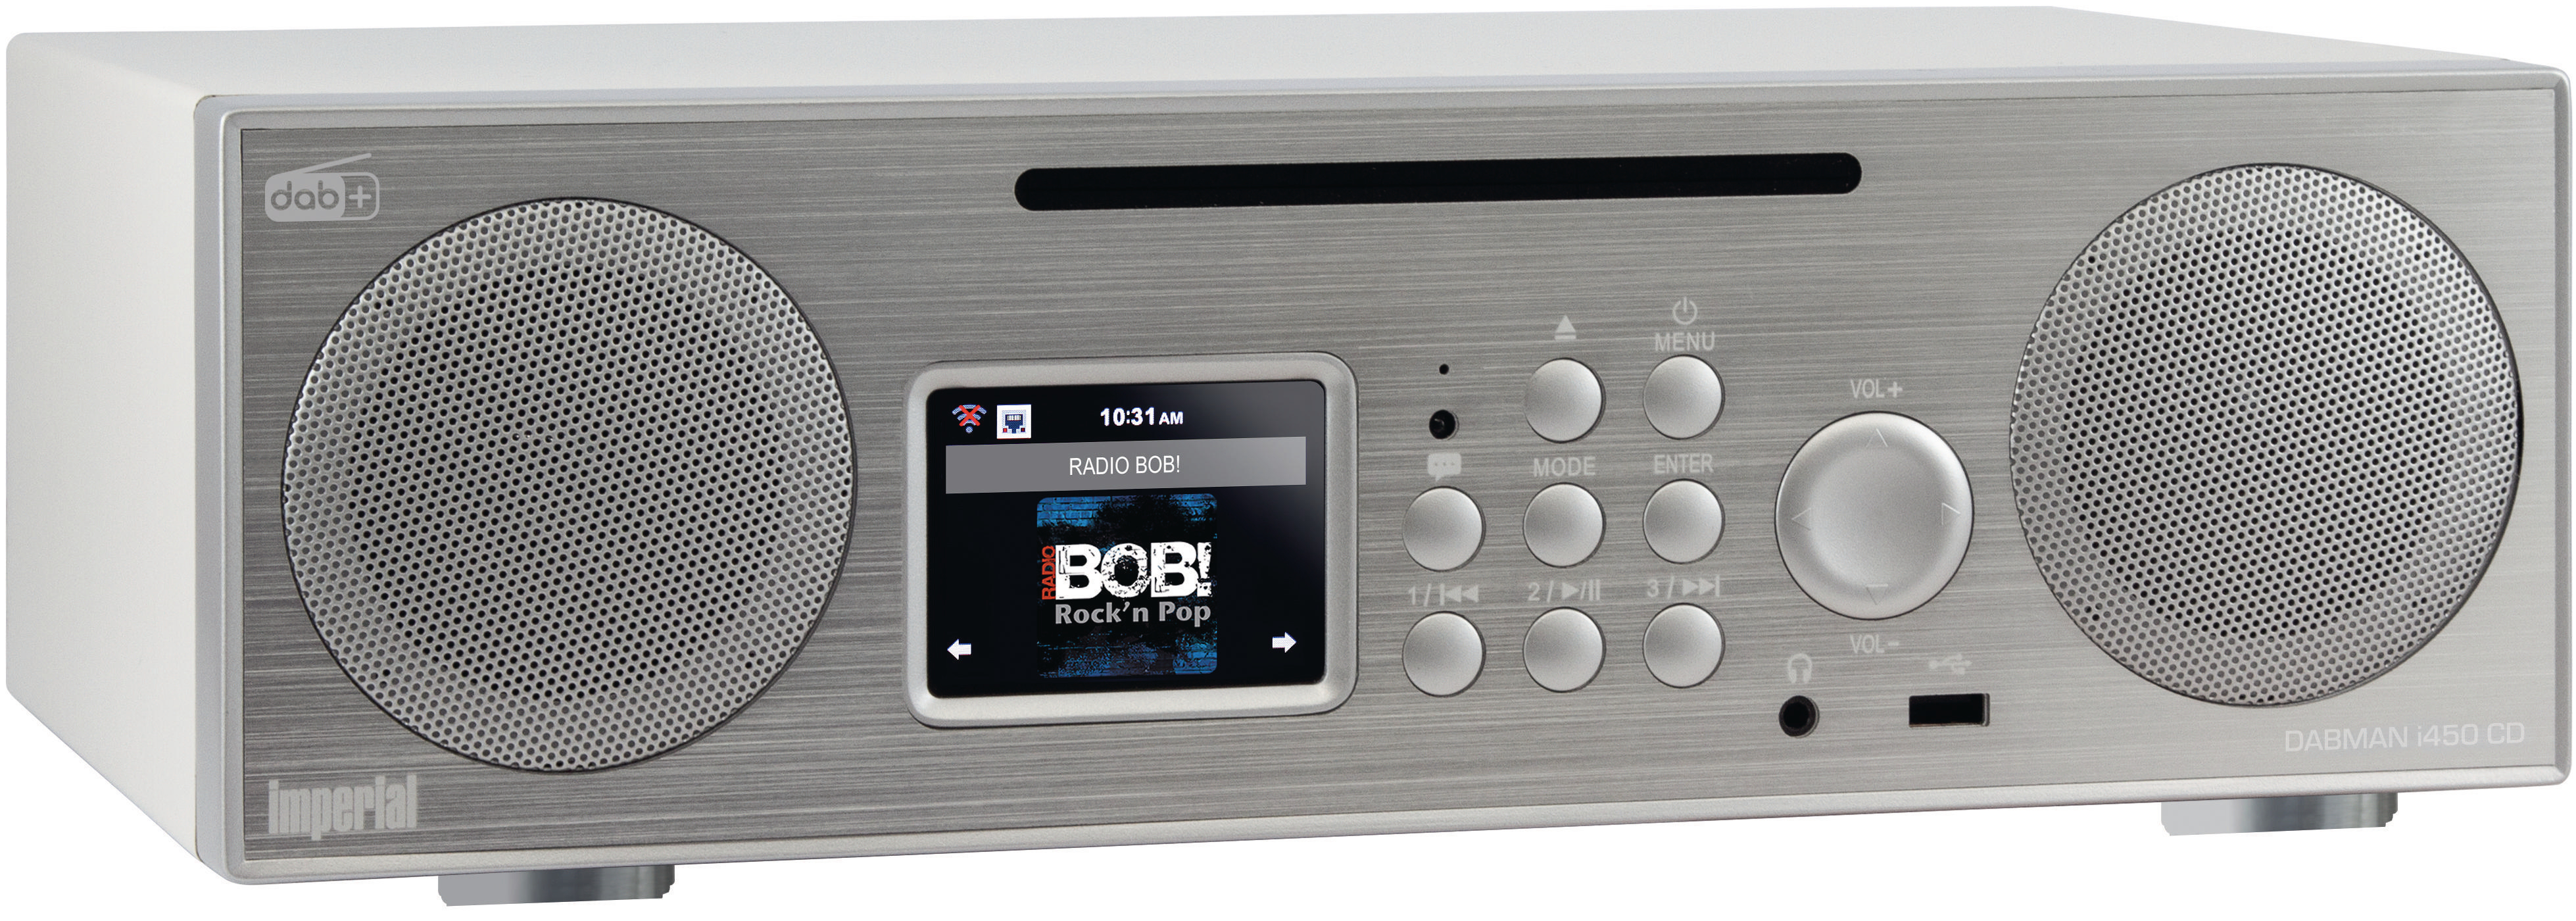 IMPERIAL DABMAN CD i450 Internet Bluetooth, FM, DAB, Radio, Radio, DAB+, DAB+ AM, silber/weiß